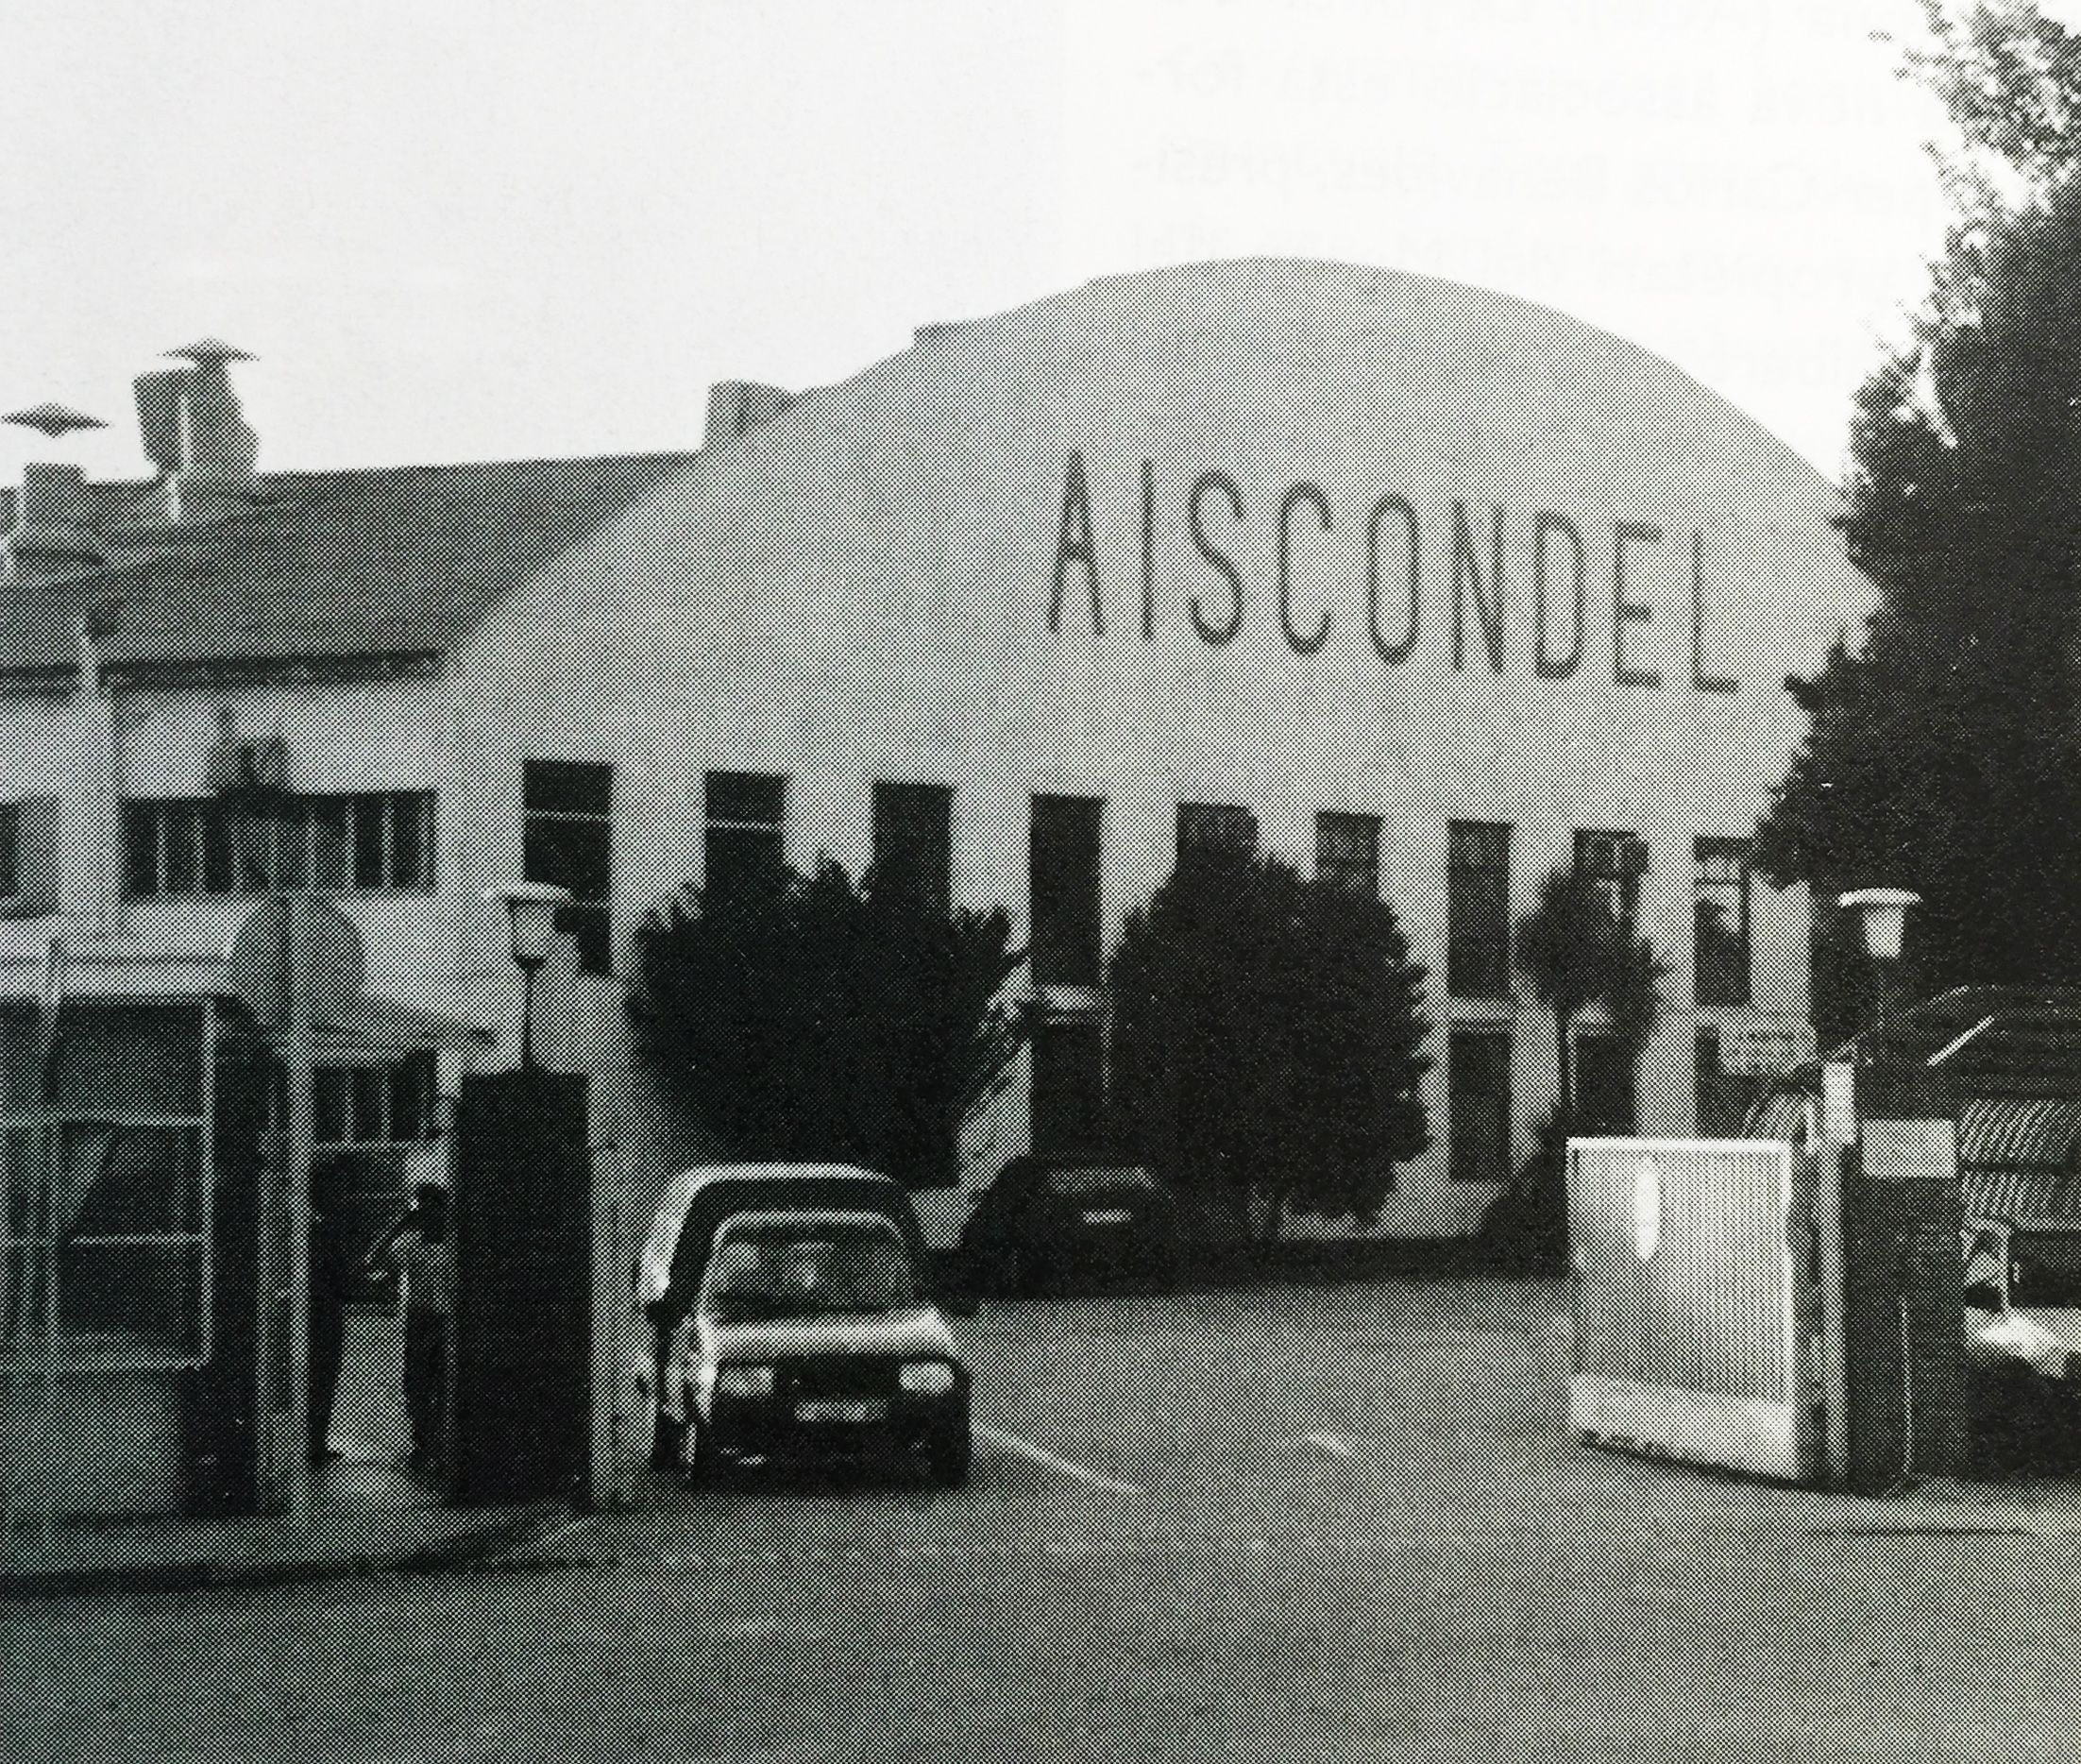 Fàbrica de la Aiscondel (juliol, 1998). FOTO: Arxiu, TOT número 568